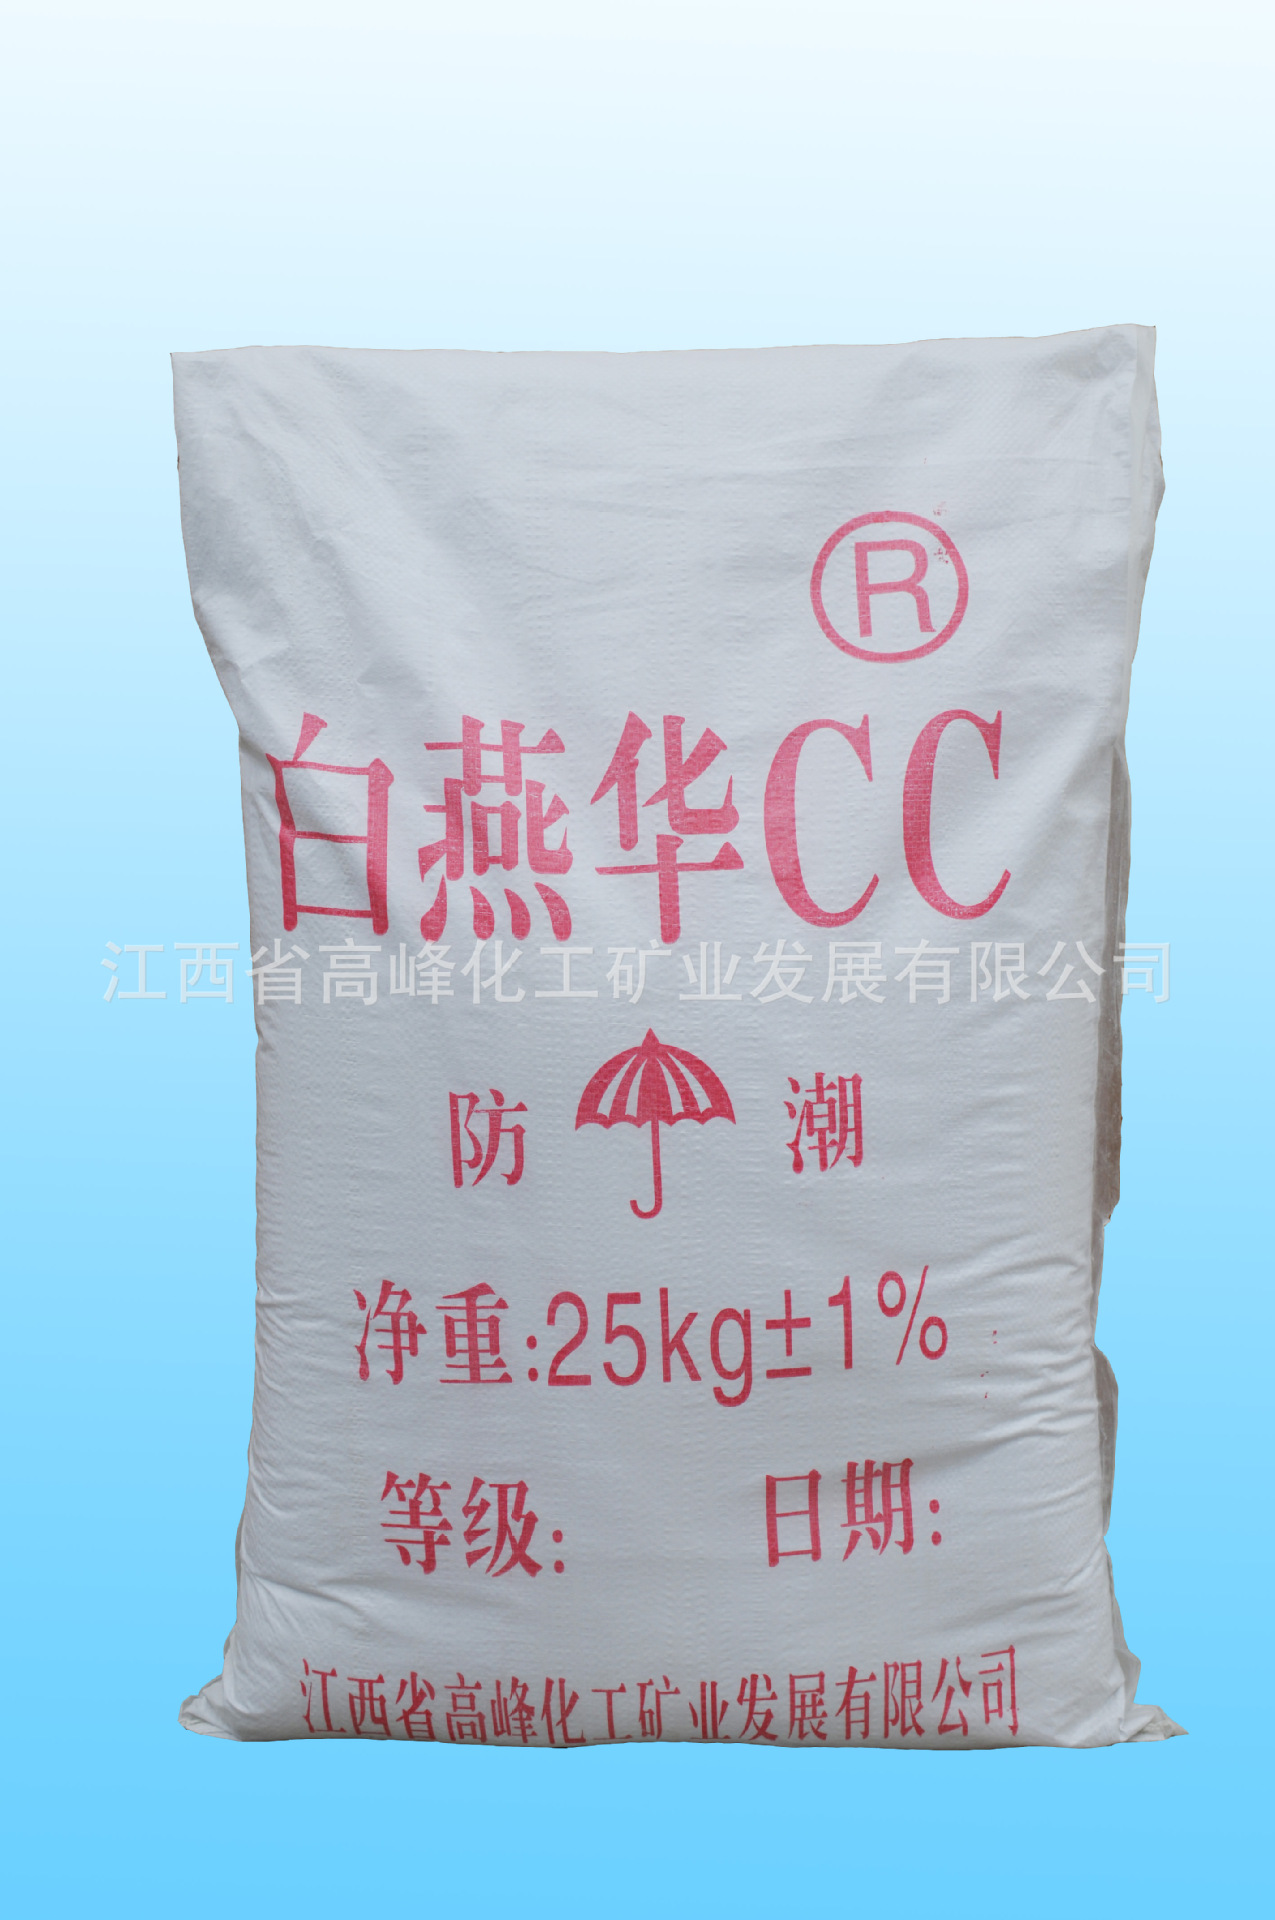 厂家直接供应白燕华CC 胶质钙